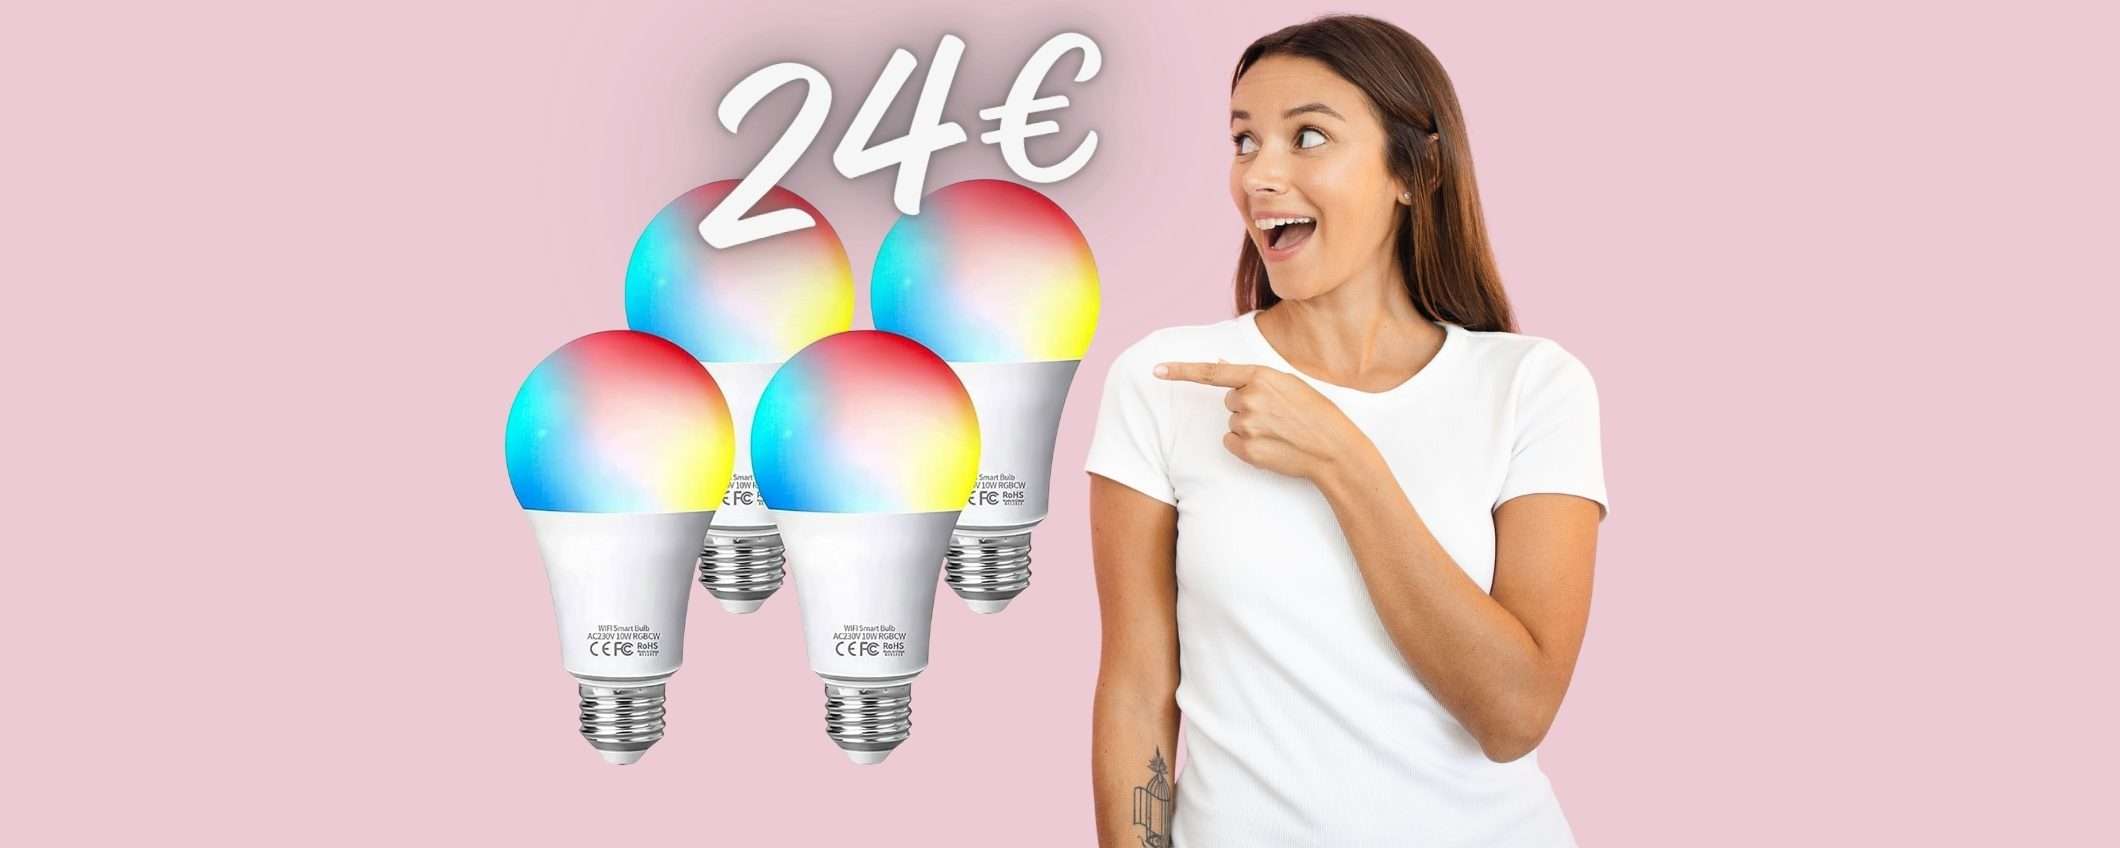 4 lampadine Smart colorate a PREZZO SHOCK, ora a soli 24€